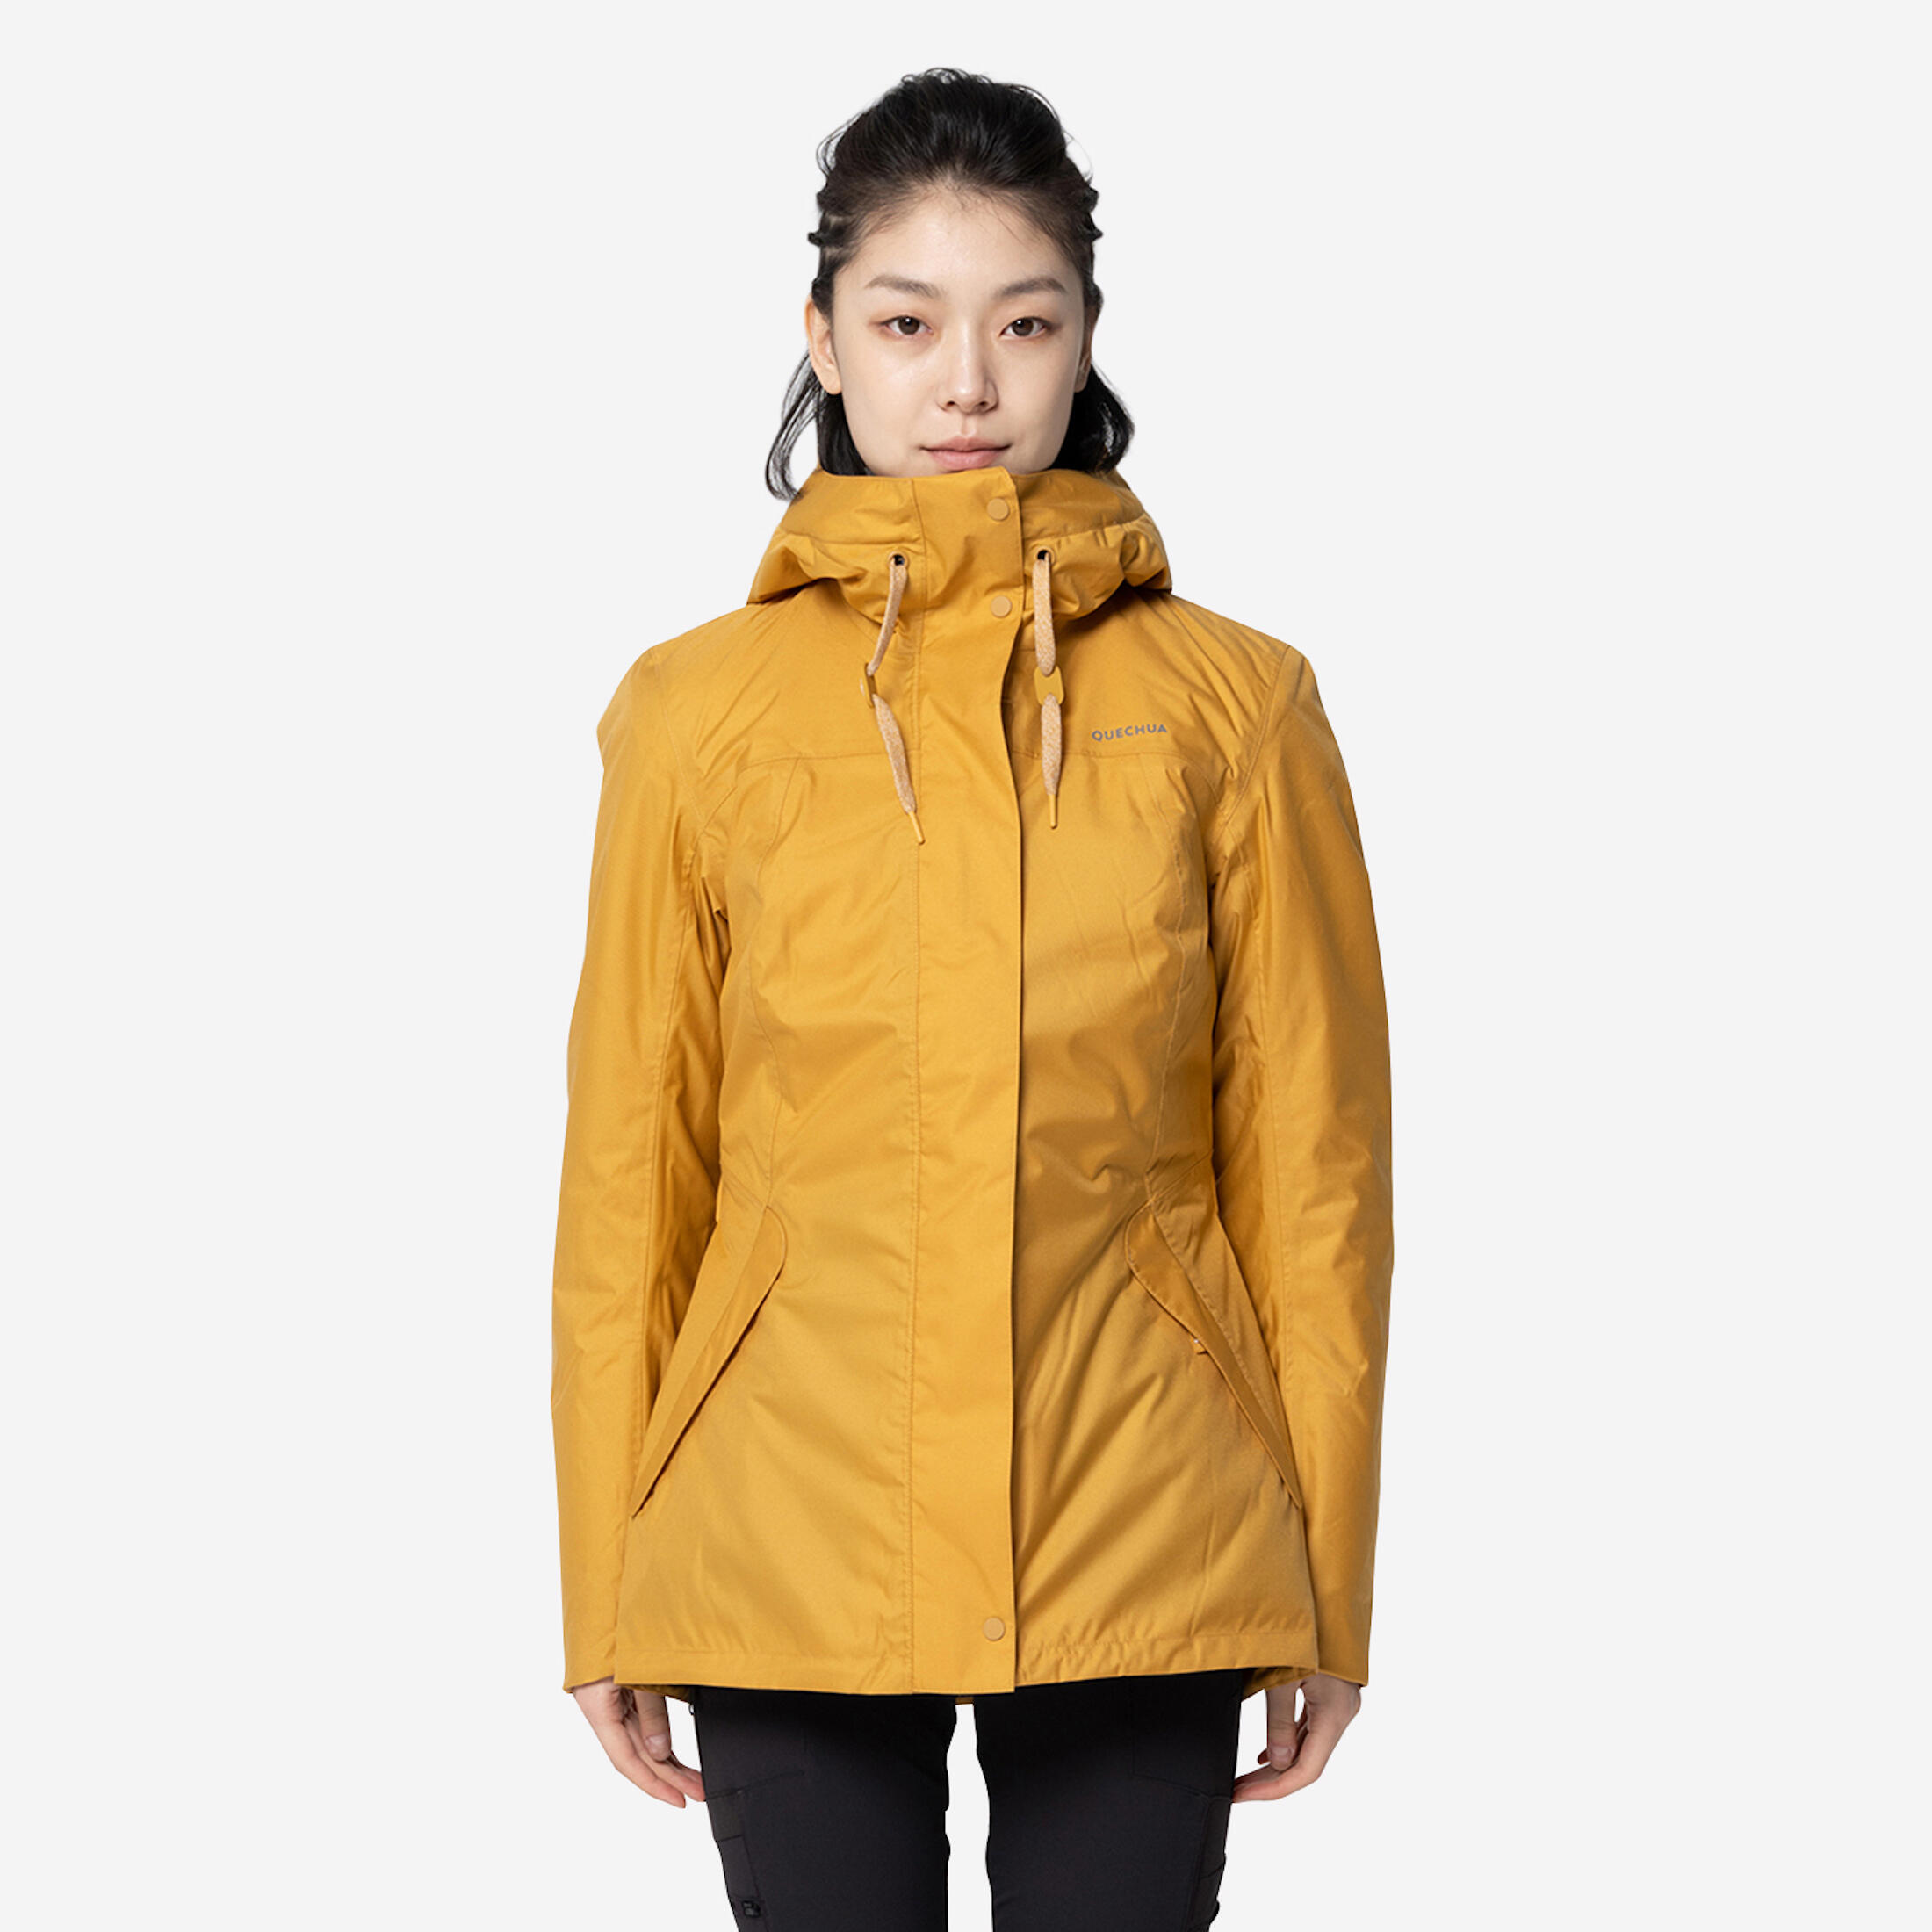 Women’s hiking waterproof winter jacket - SH500 -10°C 1/12